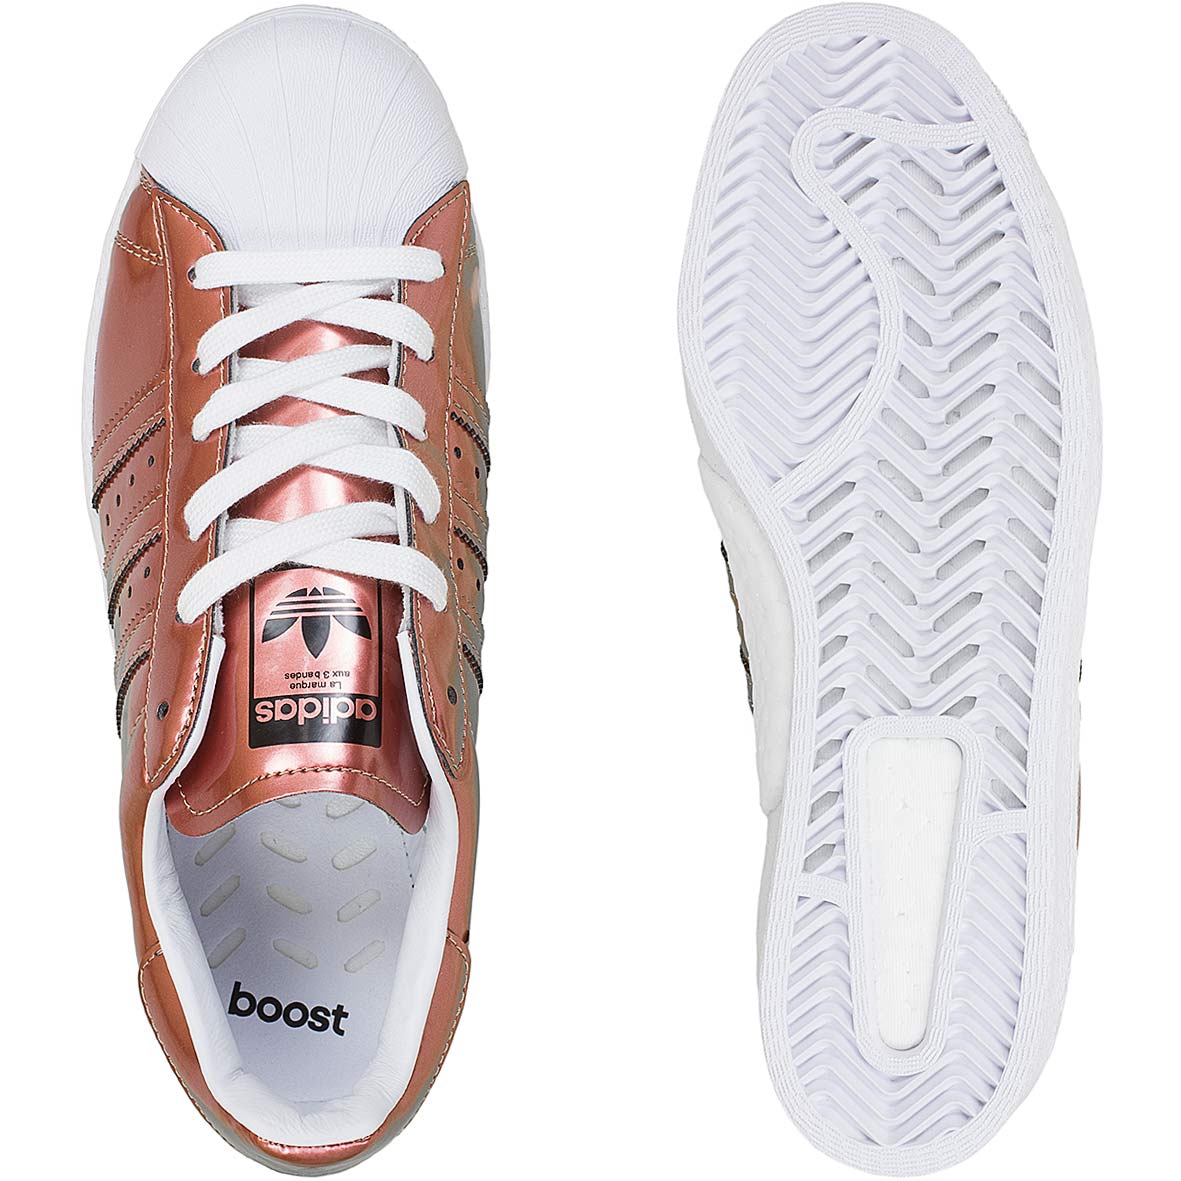 ☆ Adidas Originals Damen Sneaker Superstar kupfer/weiß - hier bestellen!